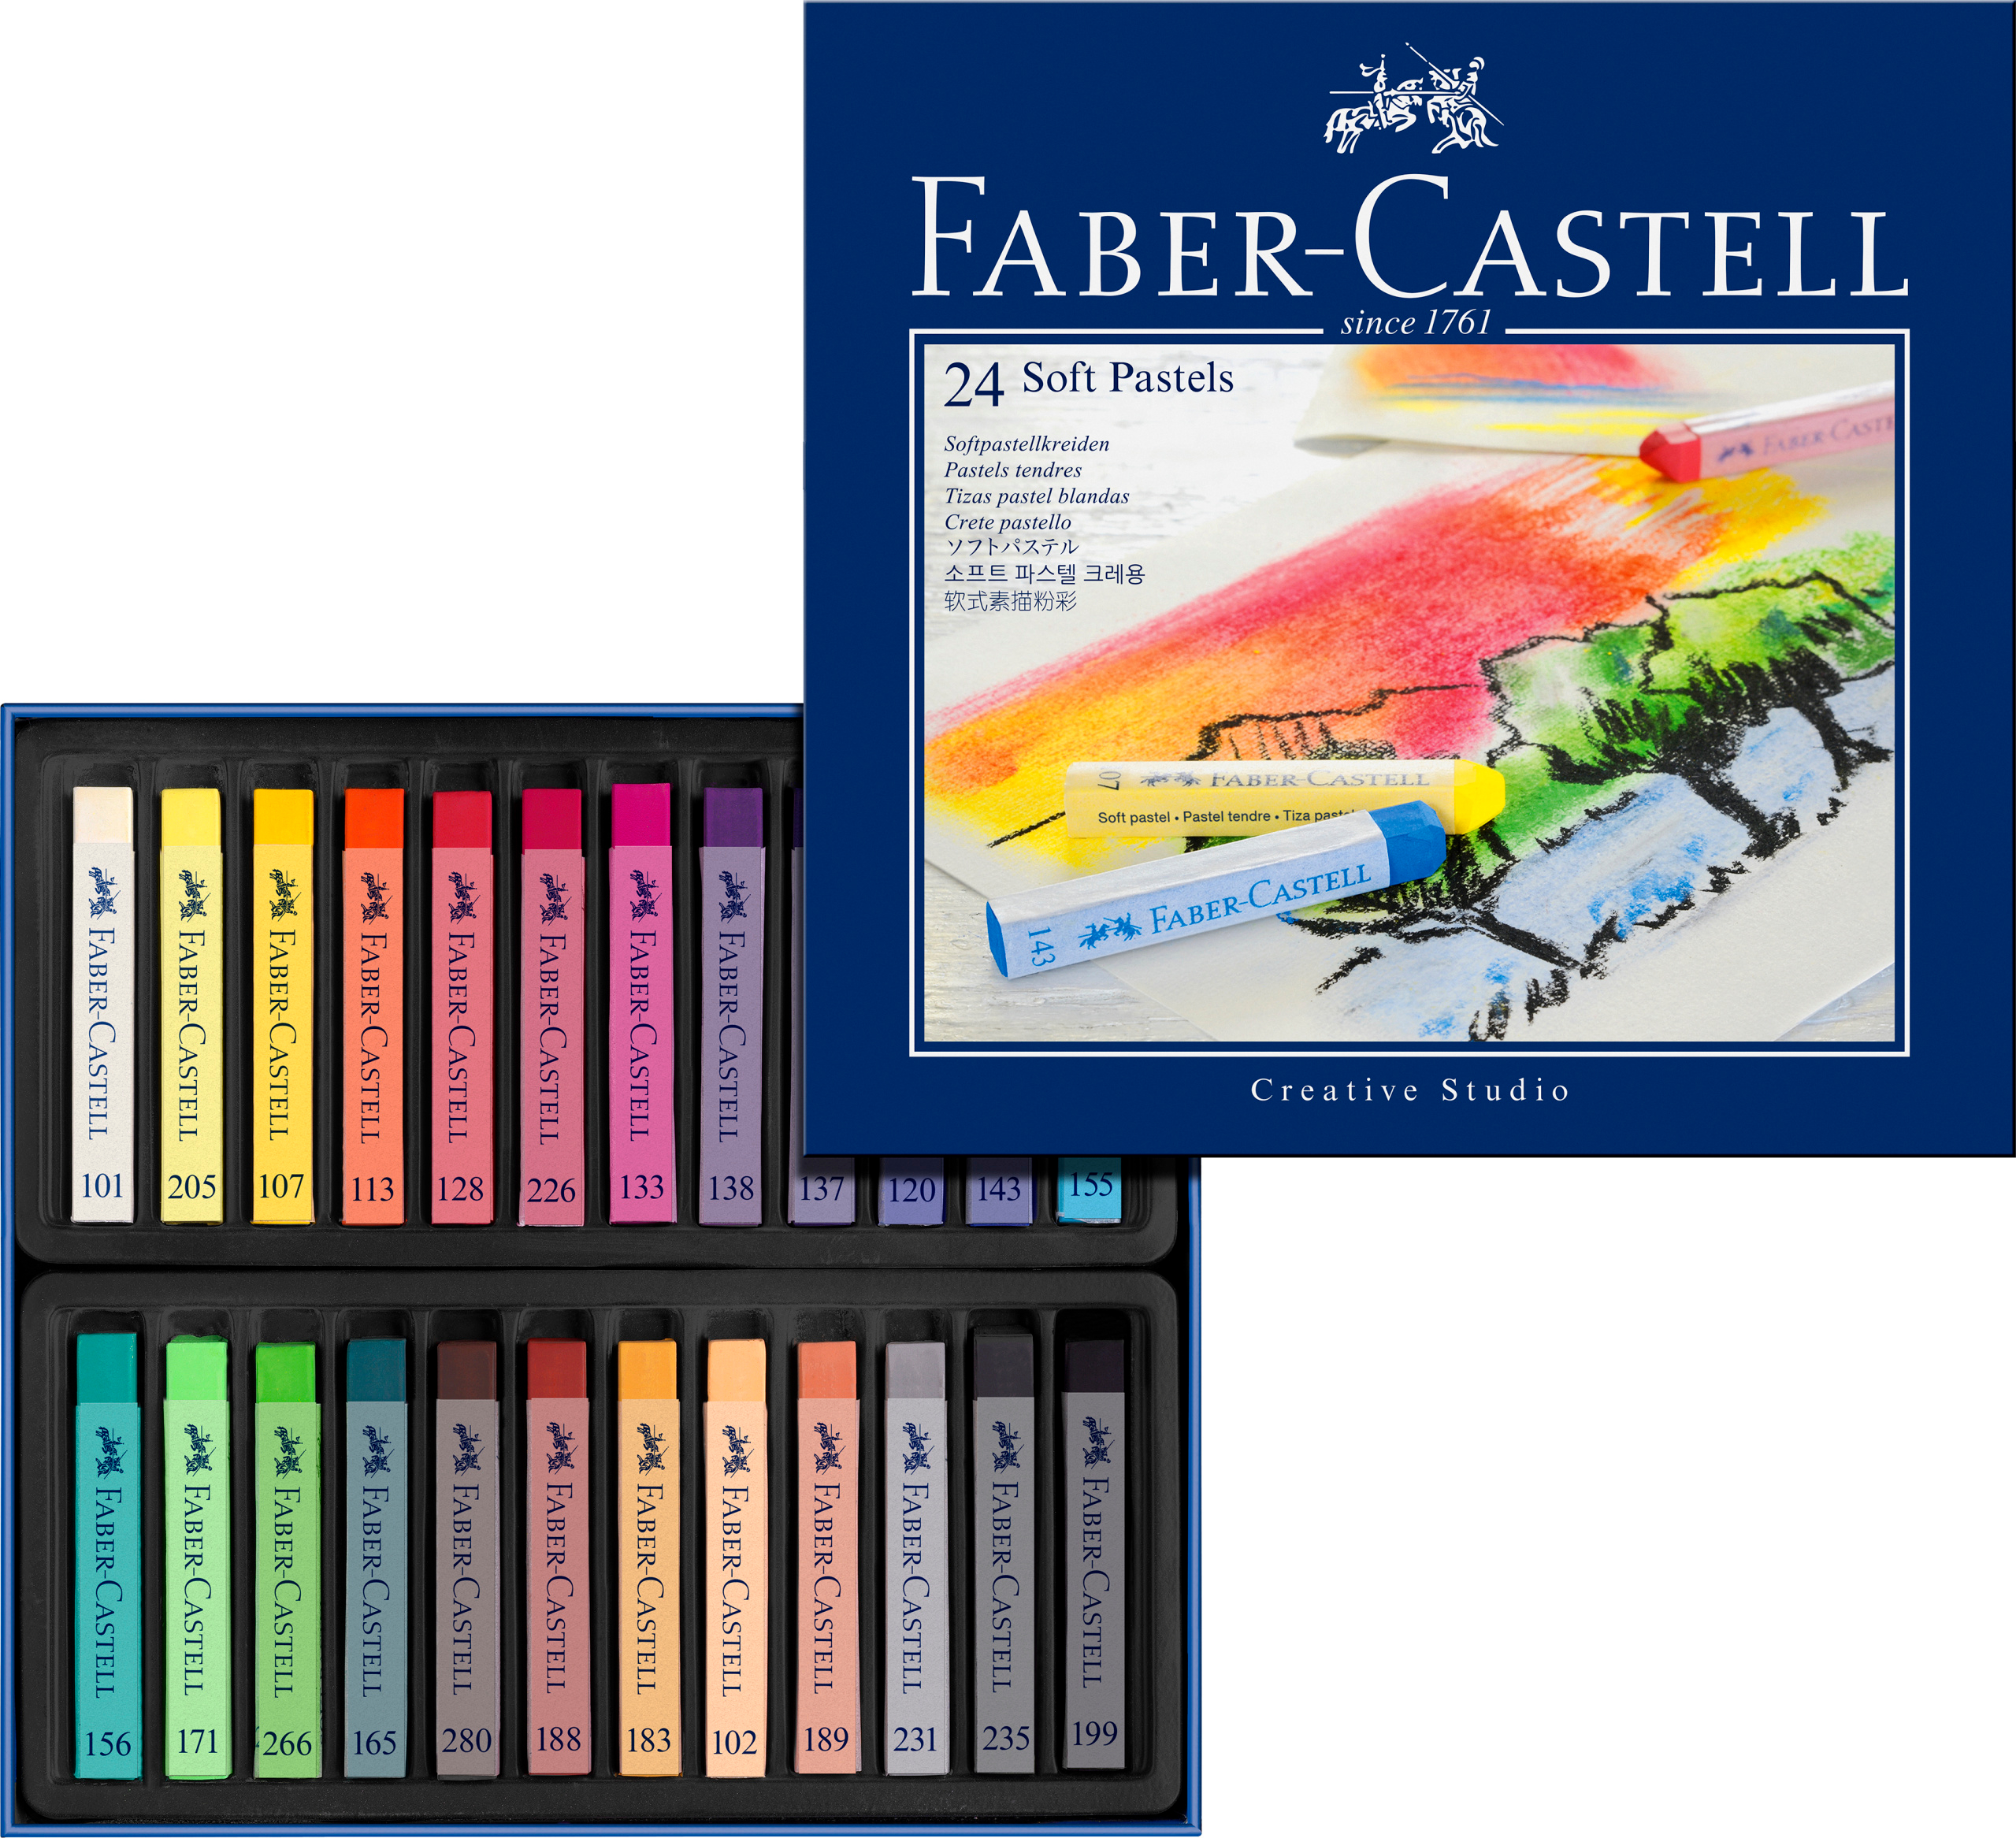 FABER-CASTELL craies pastels 128324 boîte en carton à 24 pcs